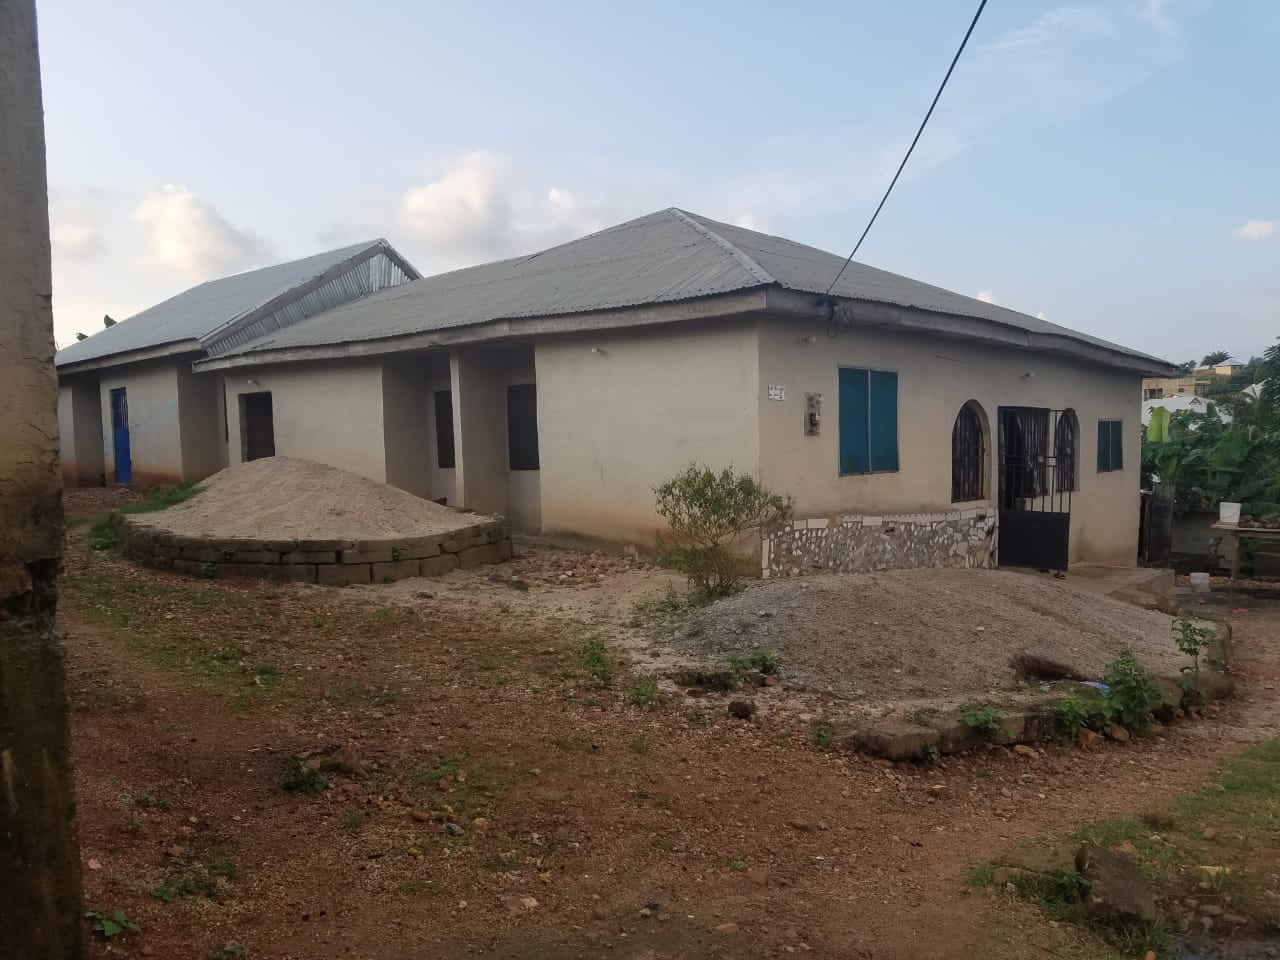 Eight bedroom house for sale at Asuofia Asamang, Kumasi